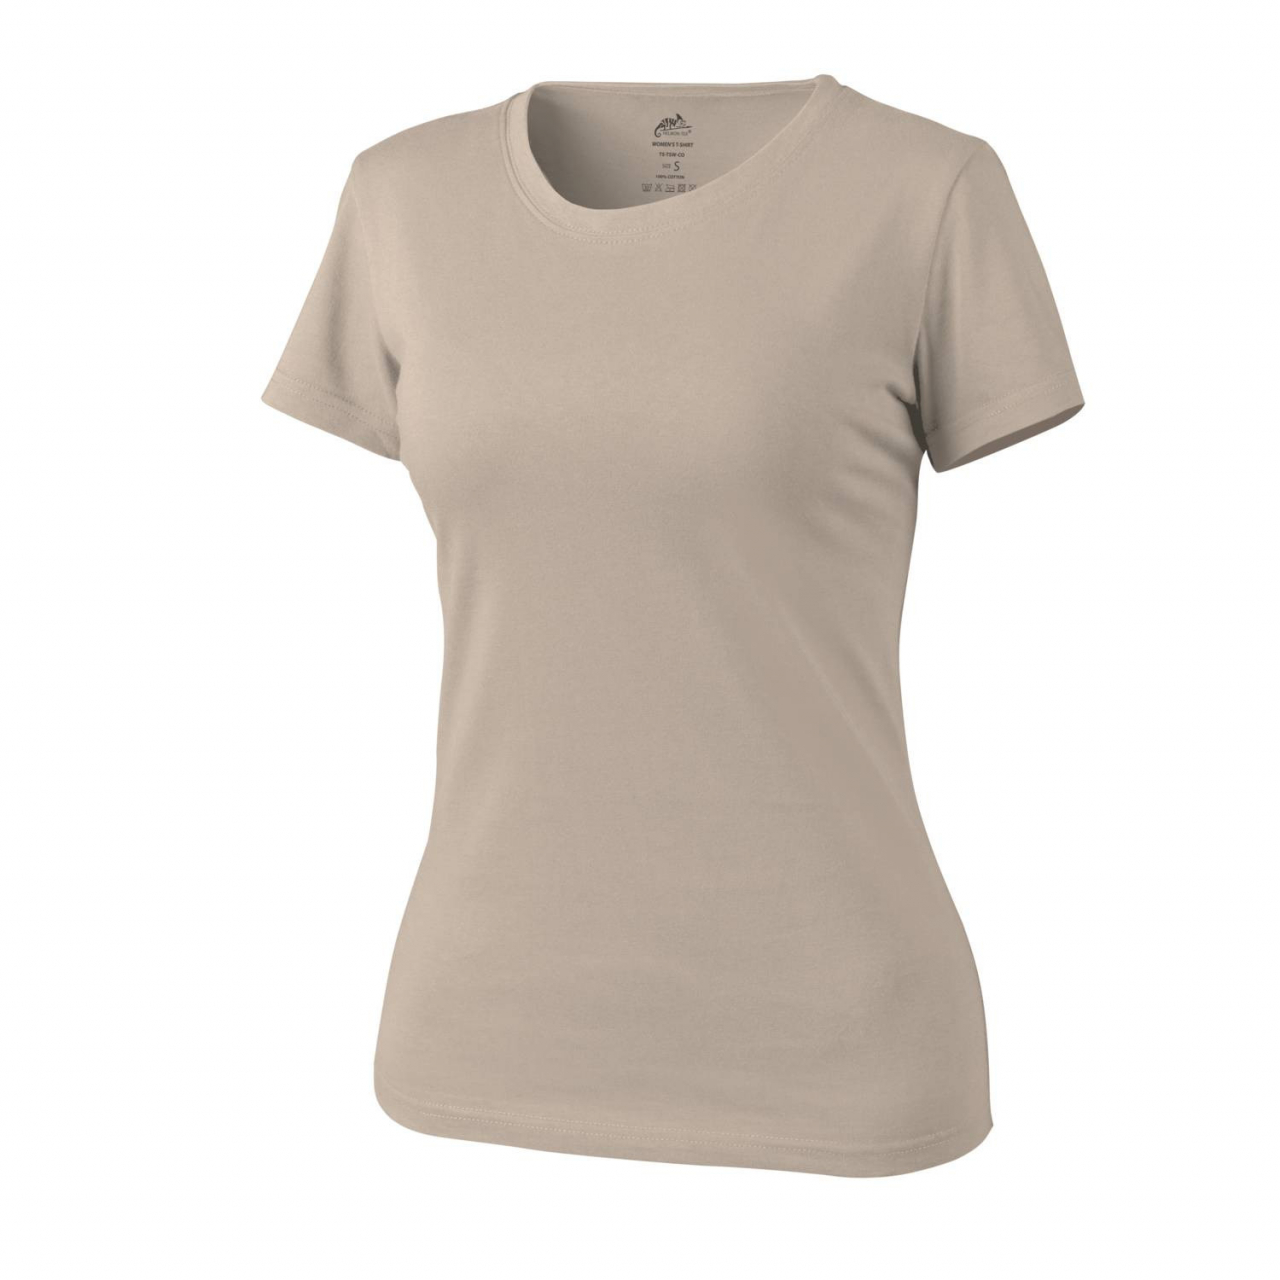 Tričko dámské Helikon Womens Shirt - béžové, XL